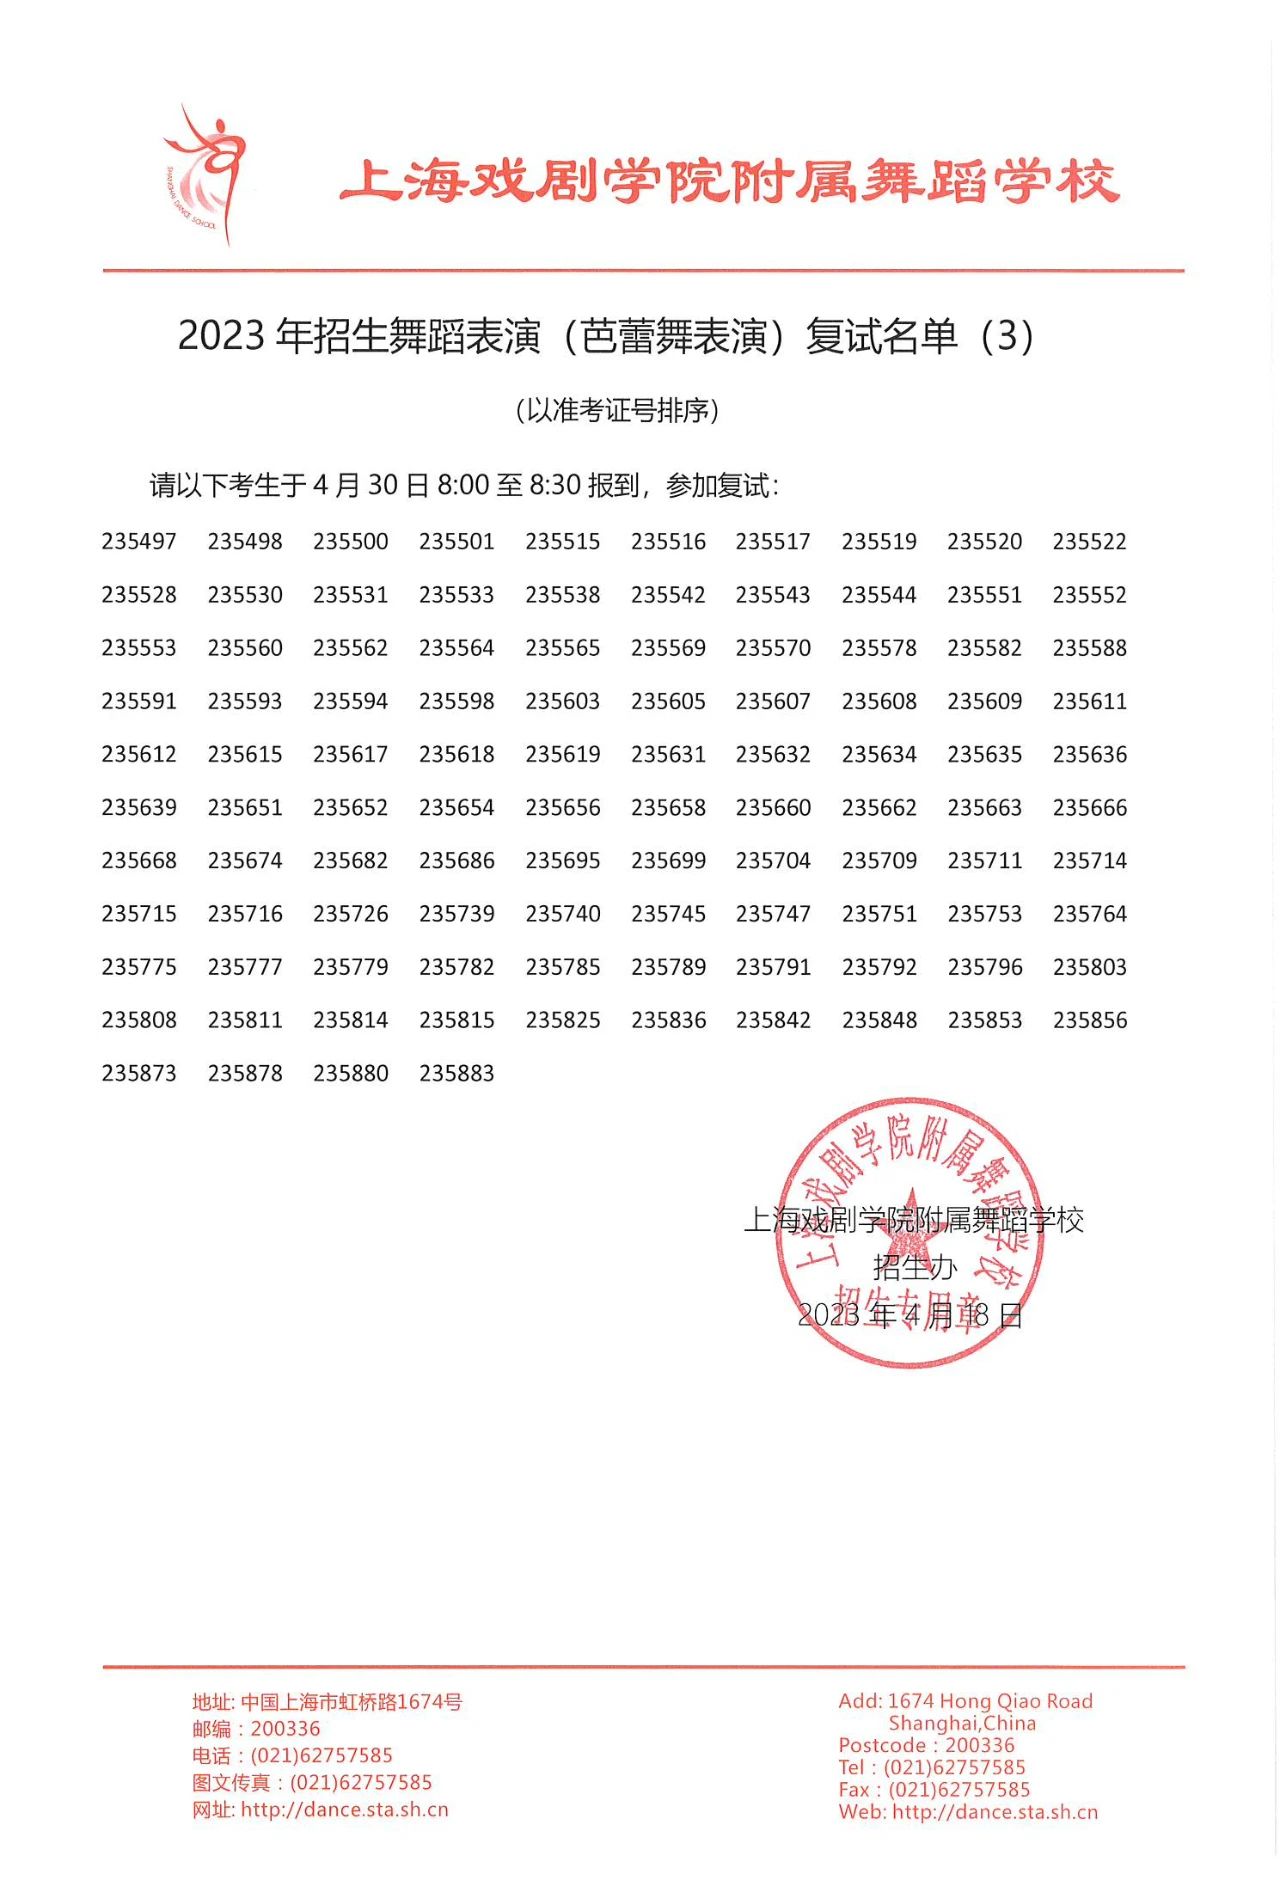 2023年上海市舞蹈學校招生復試名單及線下考試安排